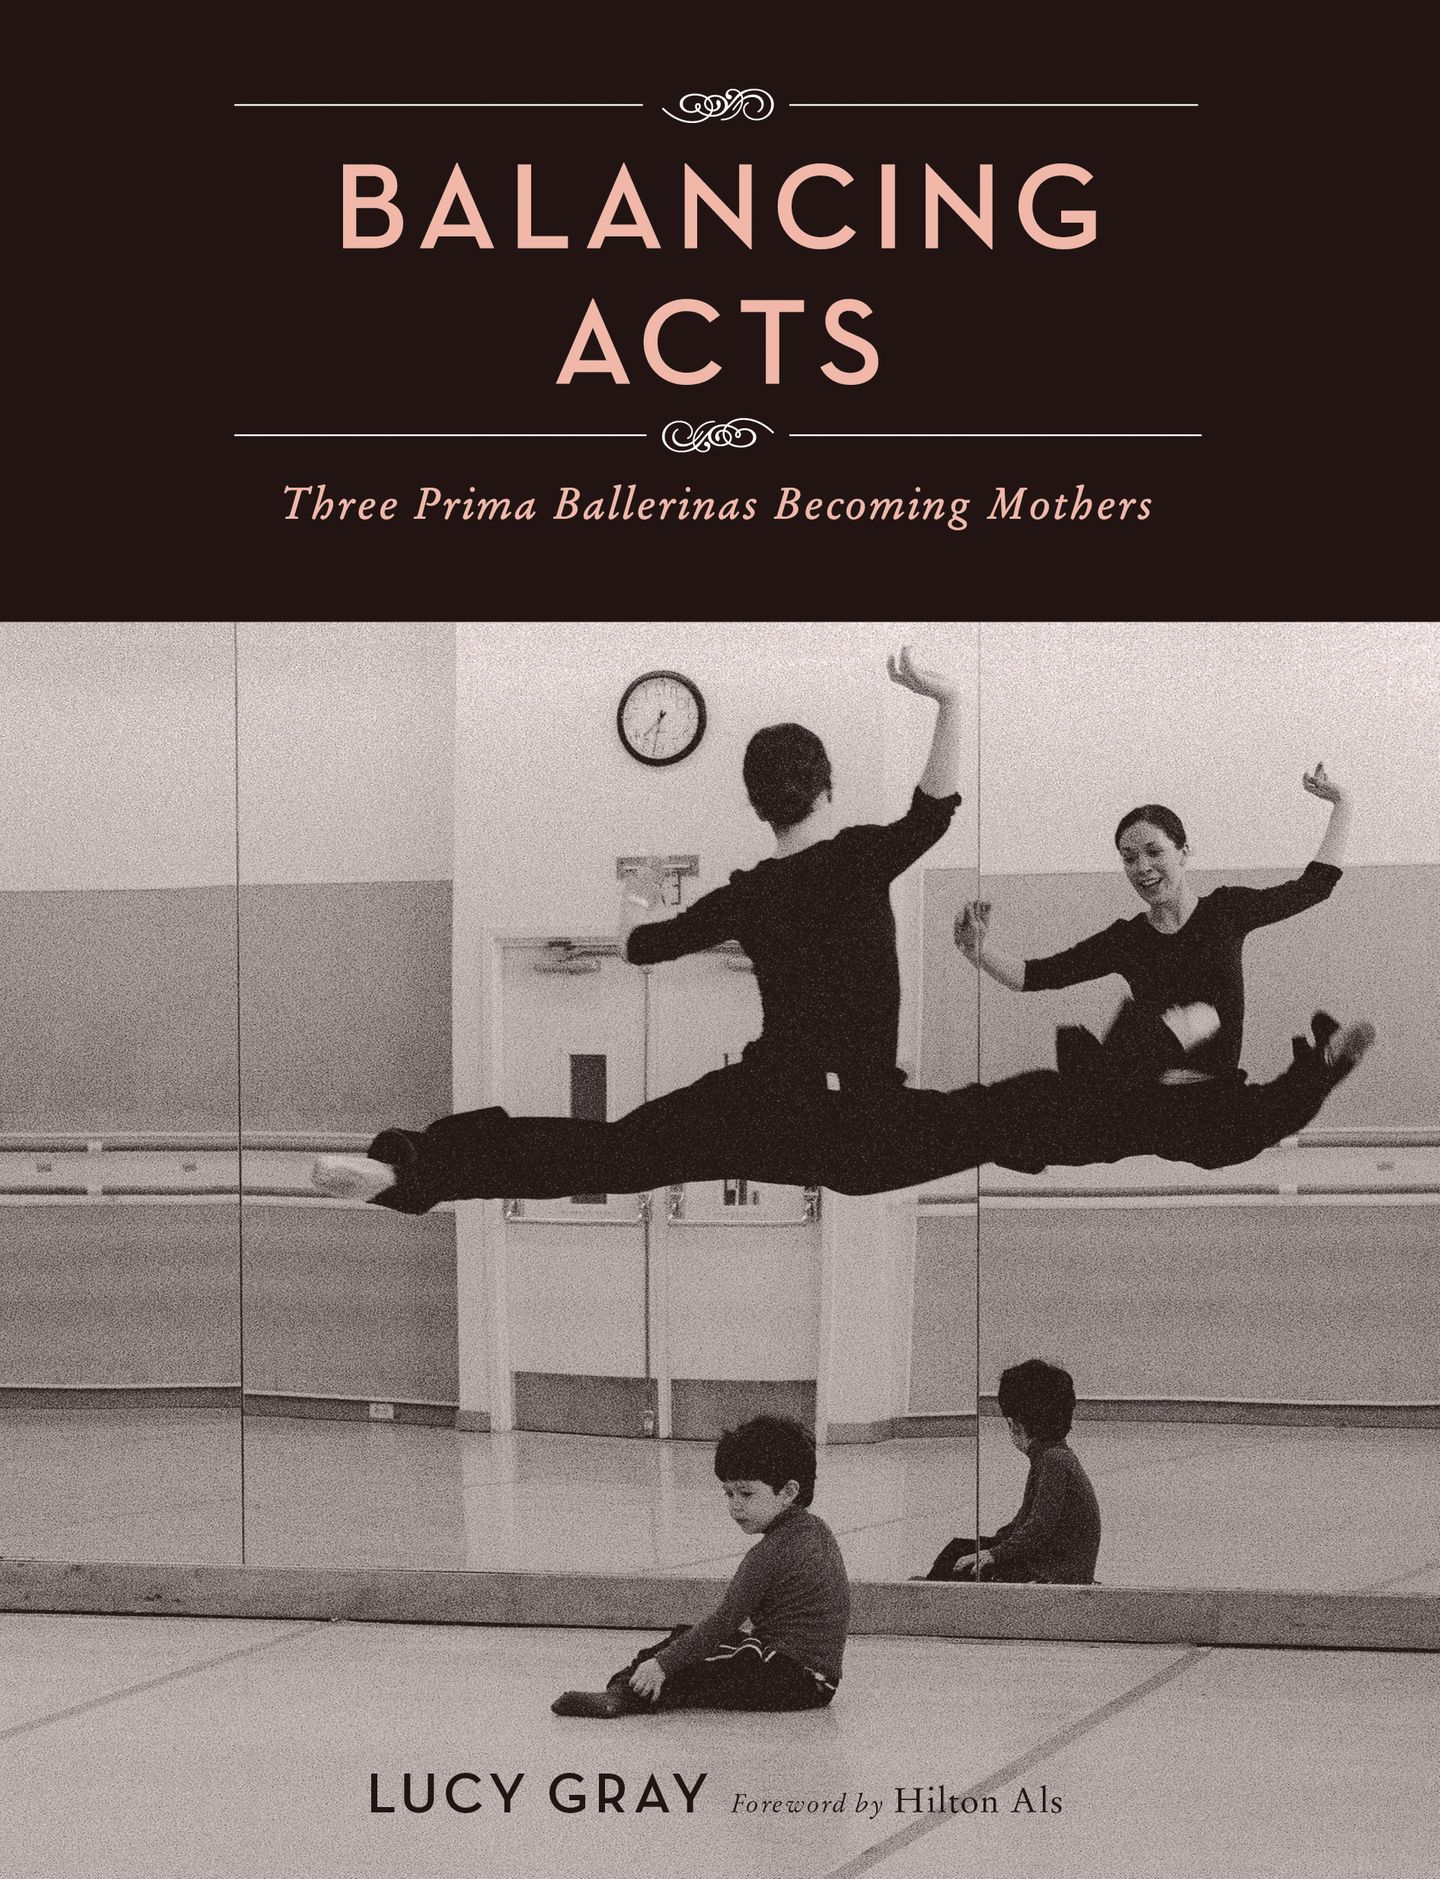 Das Buch "Balancing Acts" von Lucy Gray zeigt in Fotos und ausführlichen Interviews mit den Tänzerinnen und ihren Männern, wie sie die täglichen Balanceakte meistern (Princeton Architectural Press).